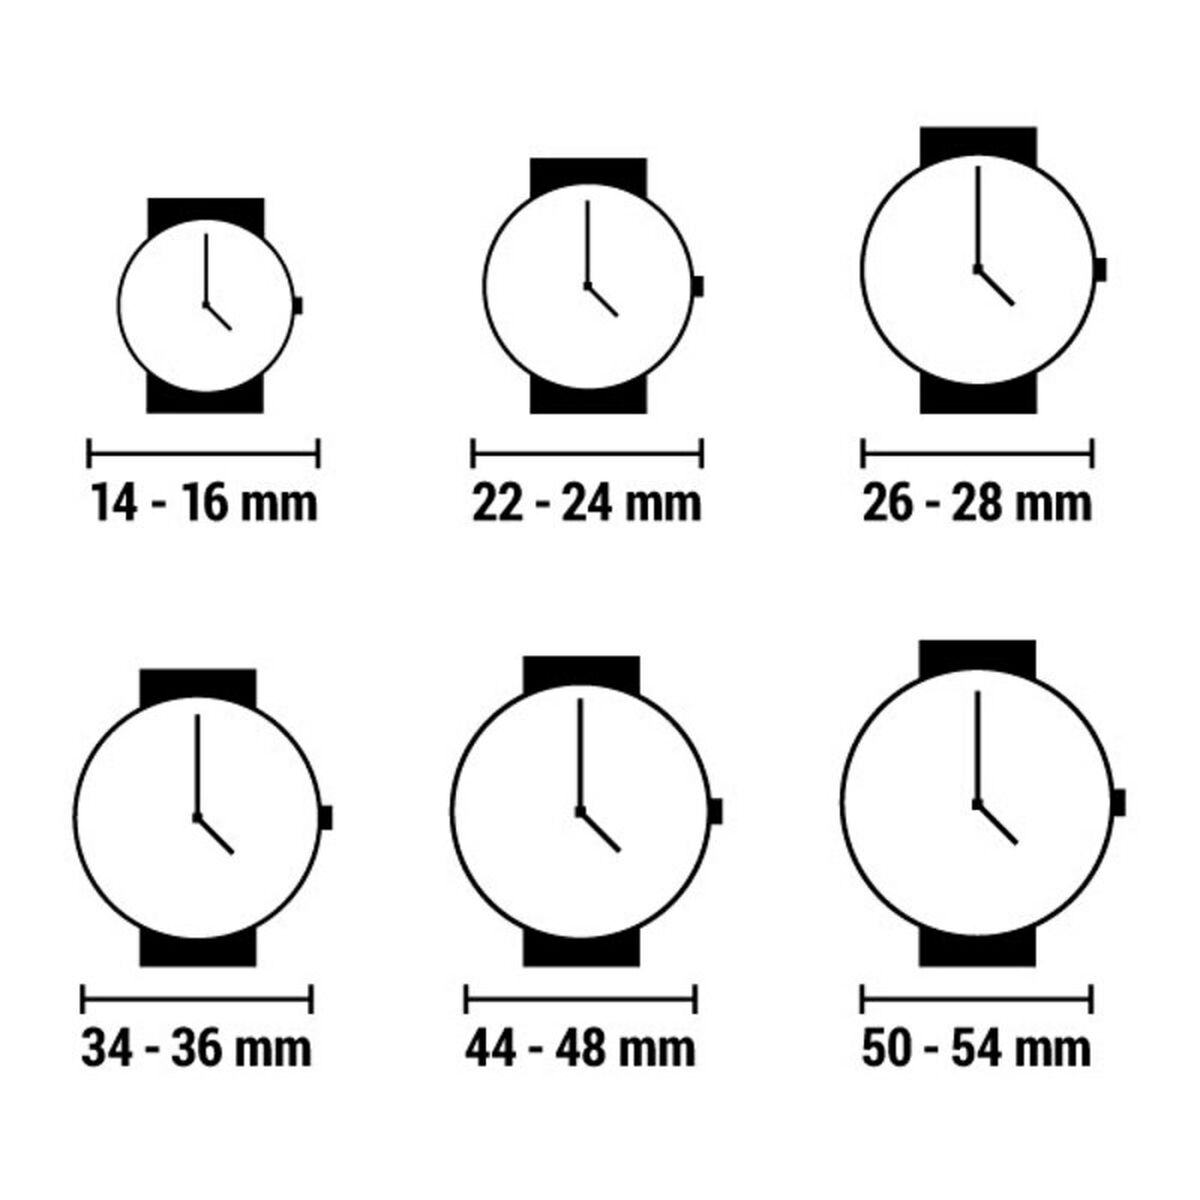 Horloge Heren Watx & Colors REWA1922 (Ø 40 mm)